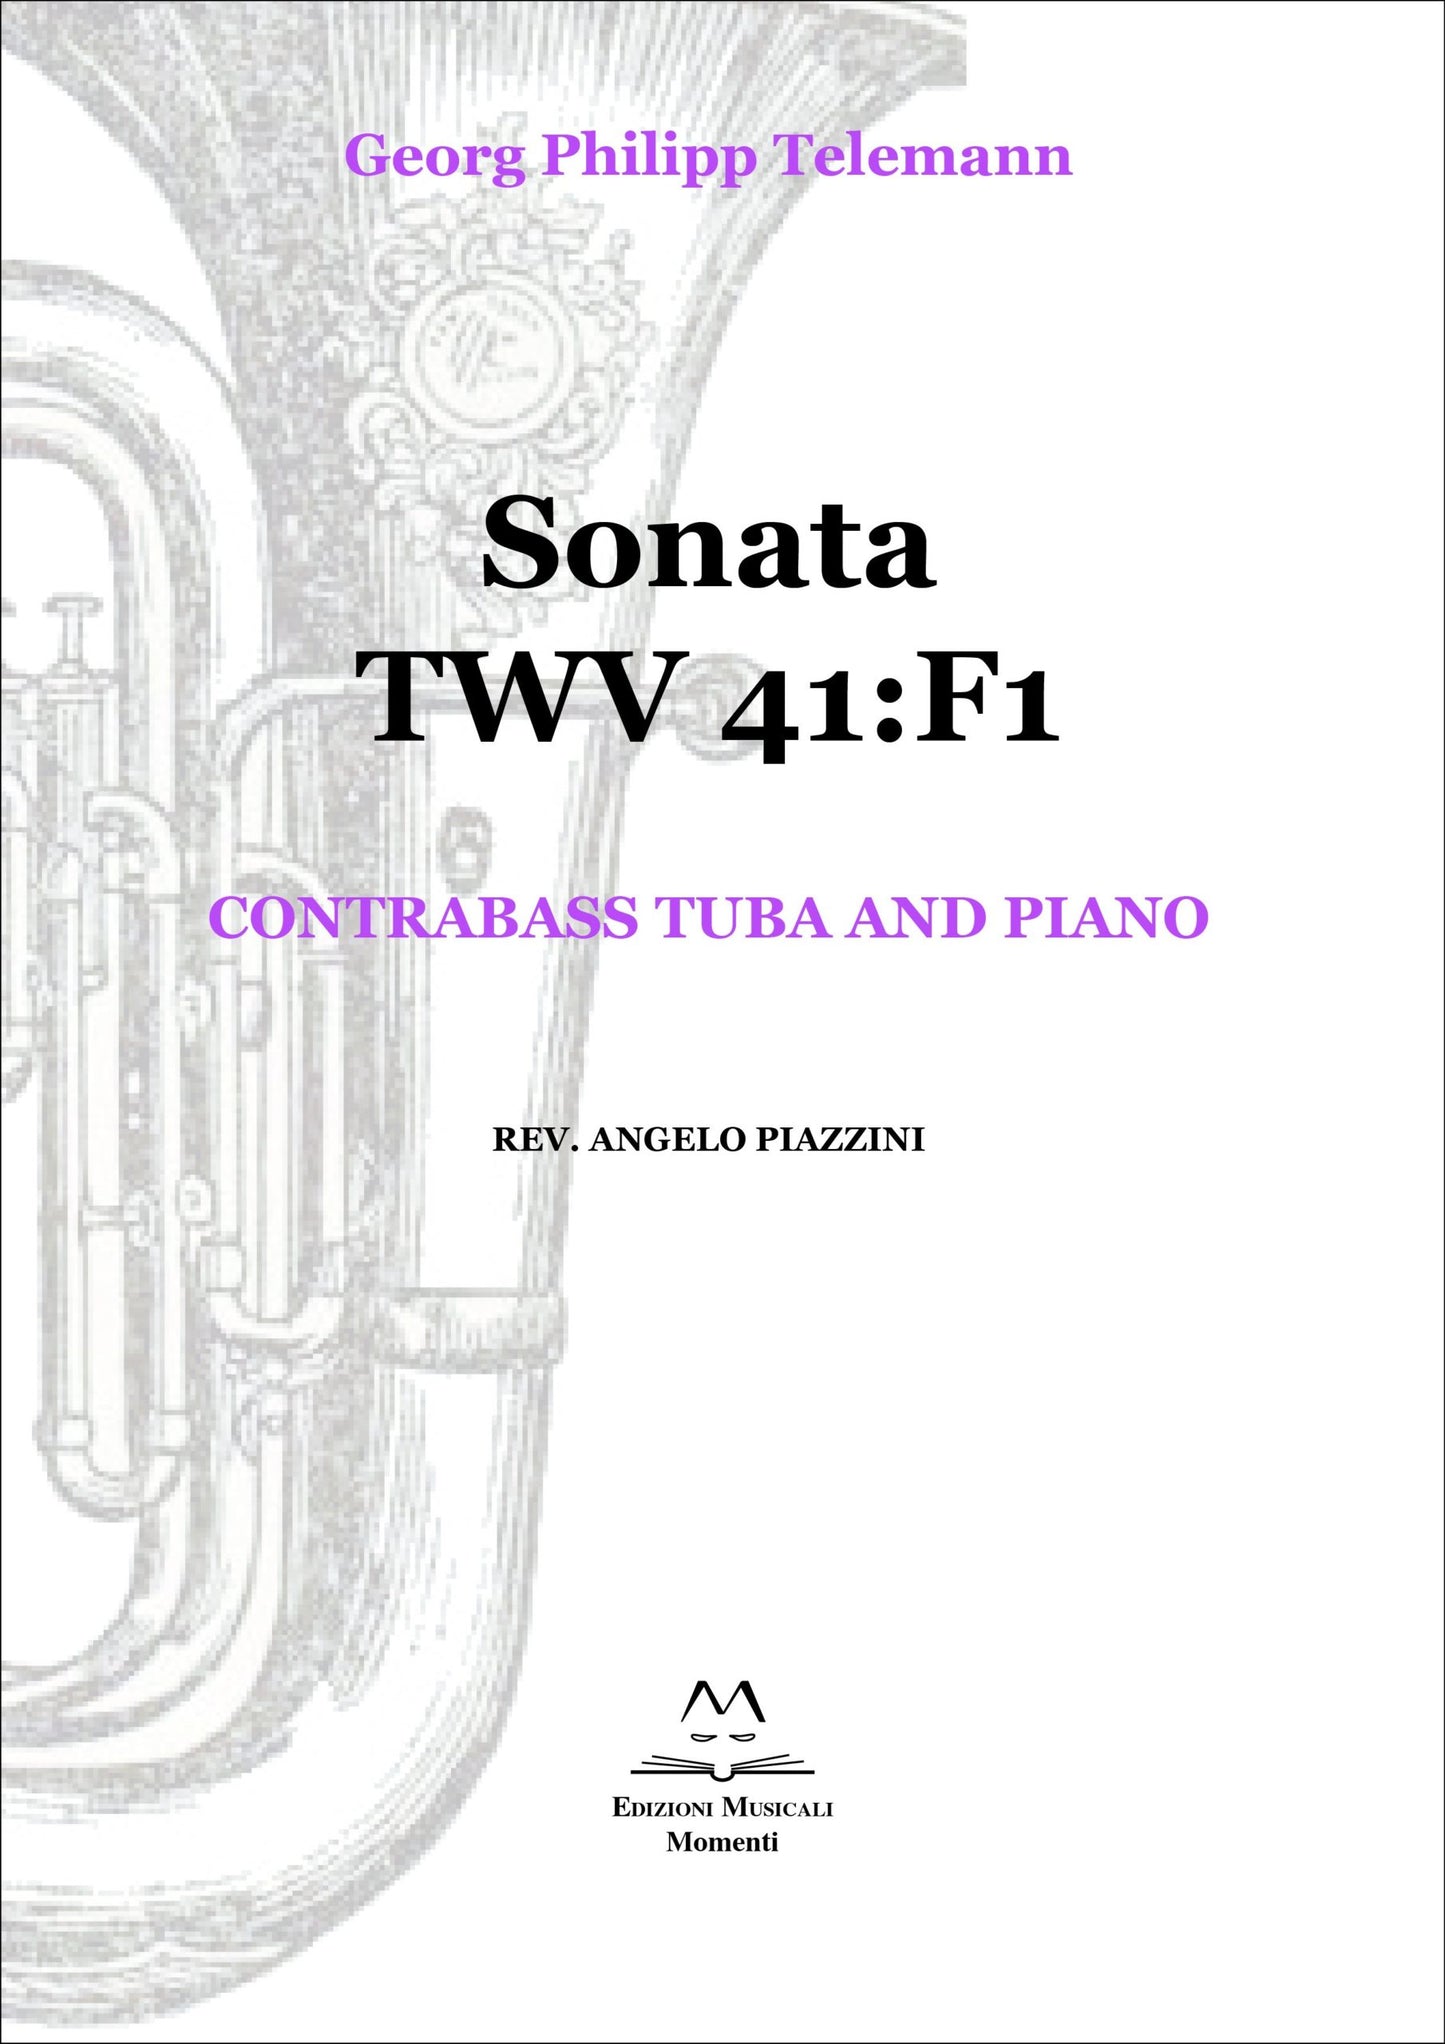 Sonata TWV 41:F1 - Contrabass tuba and piano rev. Angelo Piazzini